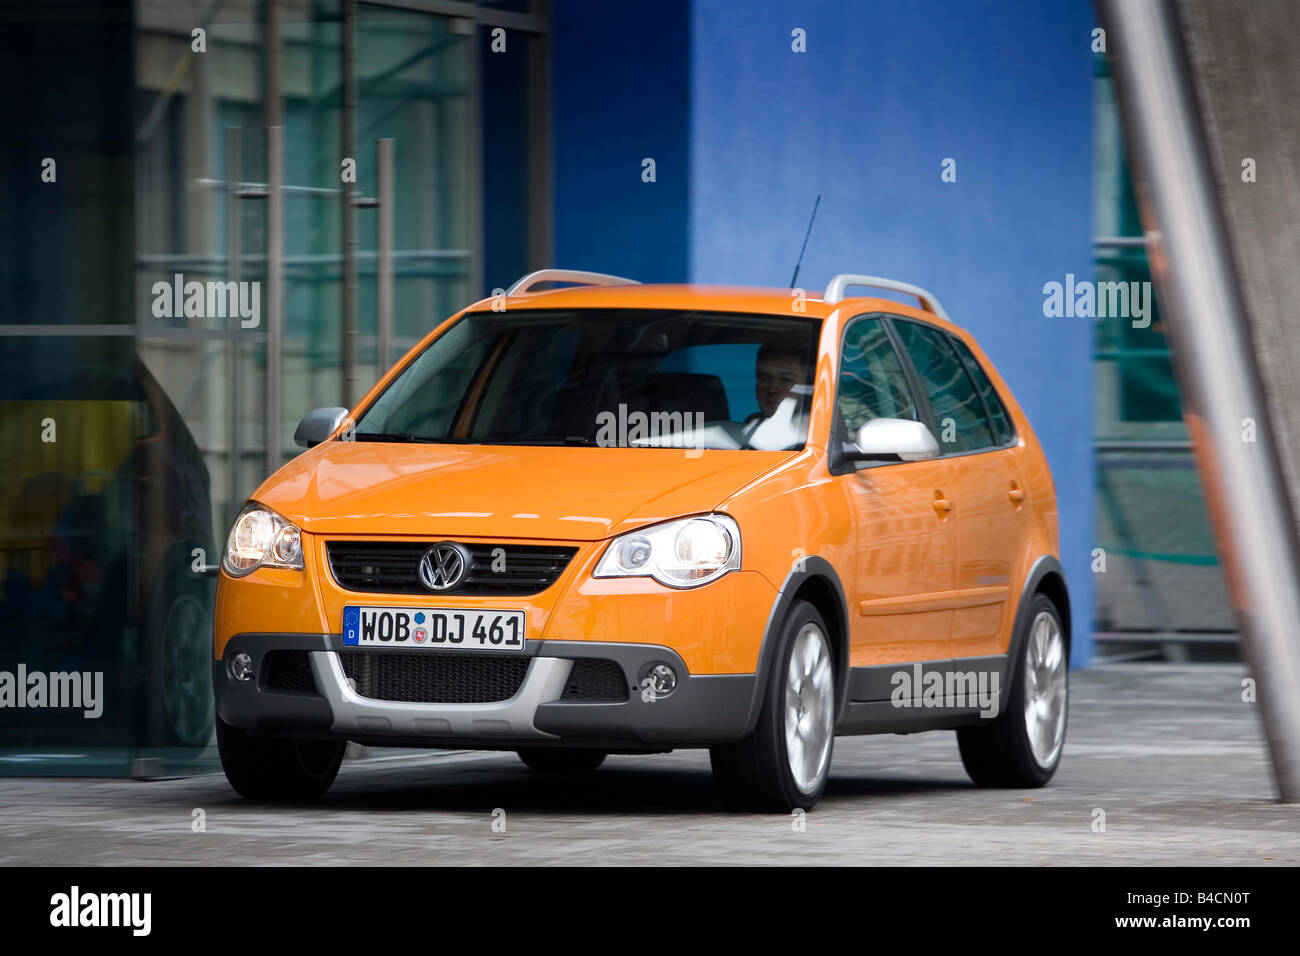 VW Volkswagen Cross Polo 1.4 TDI, Modell Jahr 2006-, orange, fahren, schräg  von vorne, Vorderansicht, Stadt Stockfotografie - Alamy